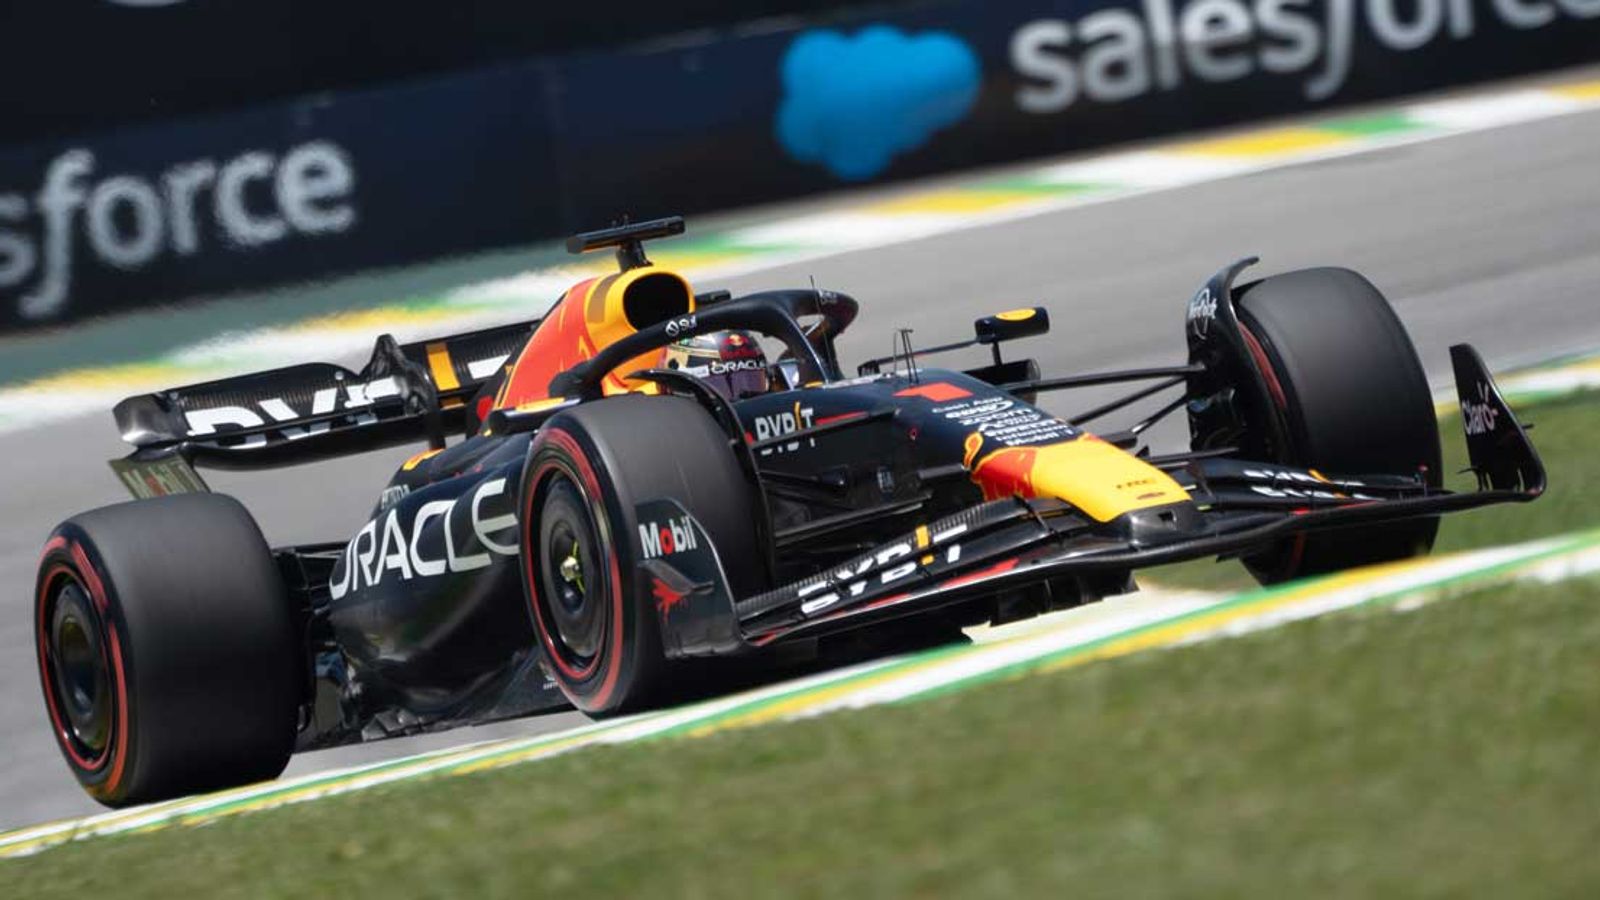 Formel 1 Liveticker Der Sprint und das Sprint-Qualifying in Sao Paulo Formel 1 News Sky Sport